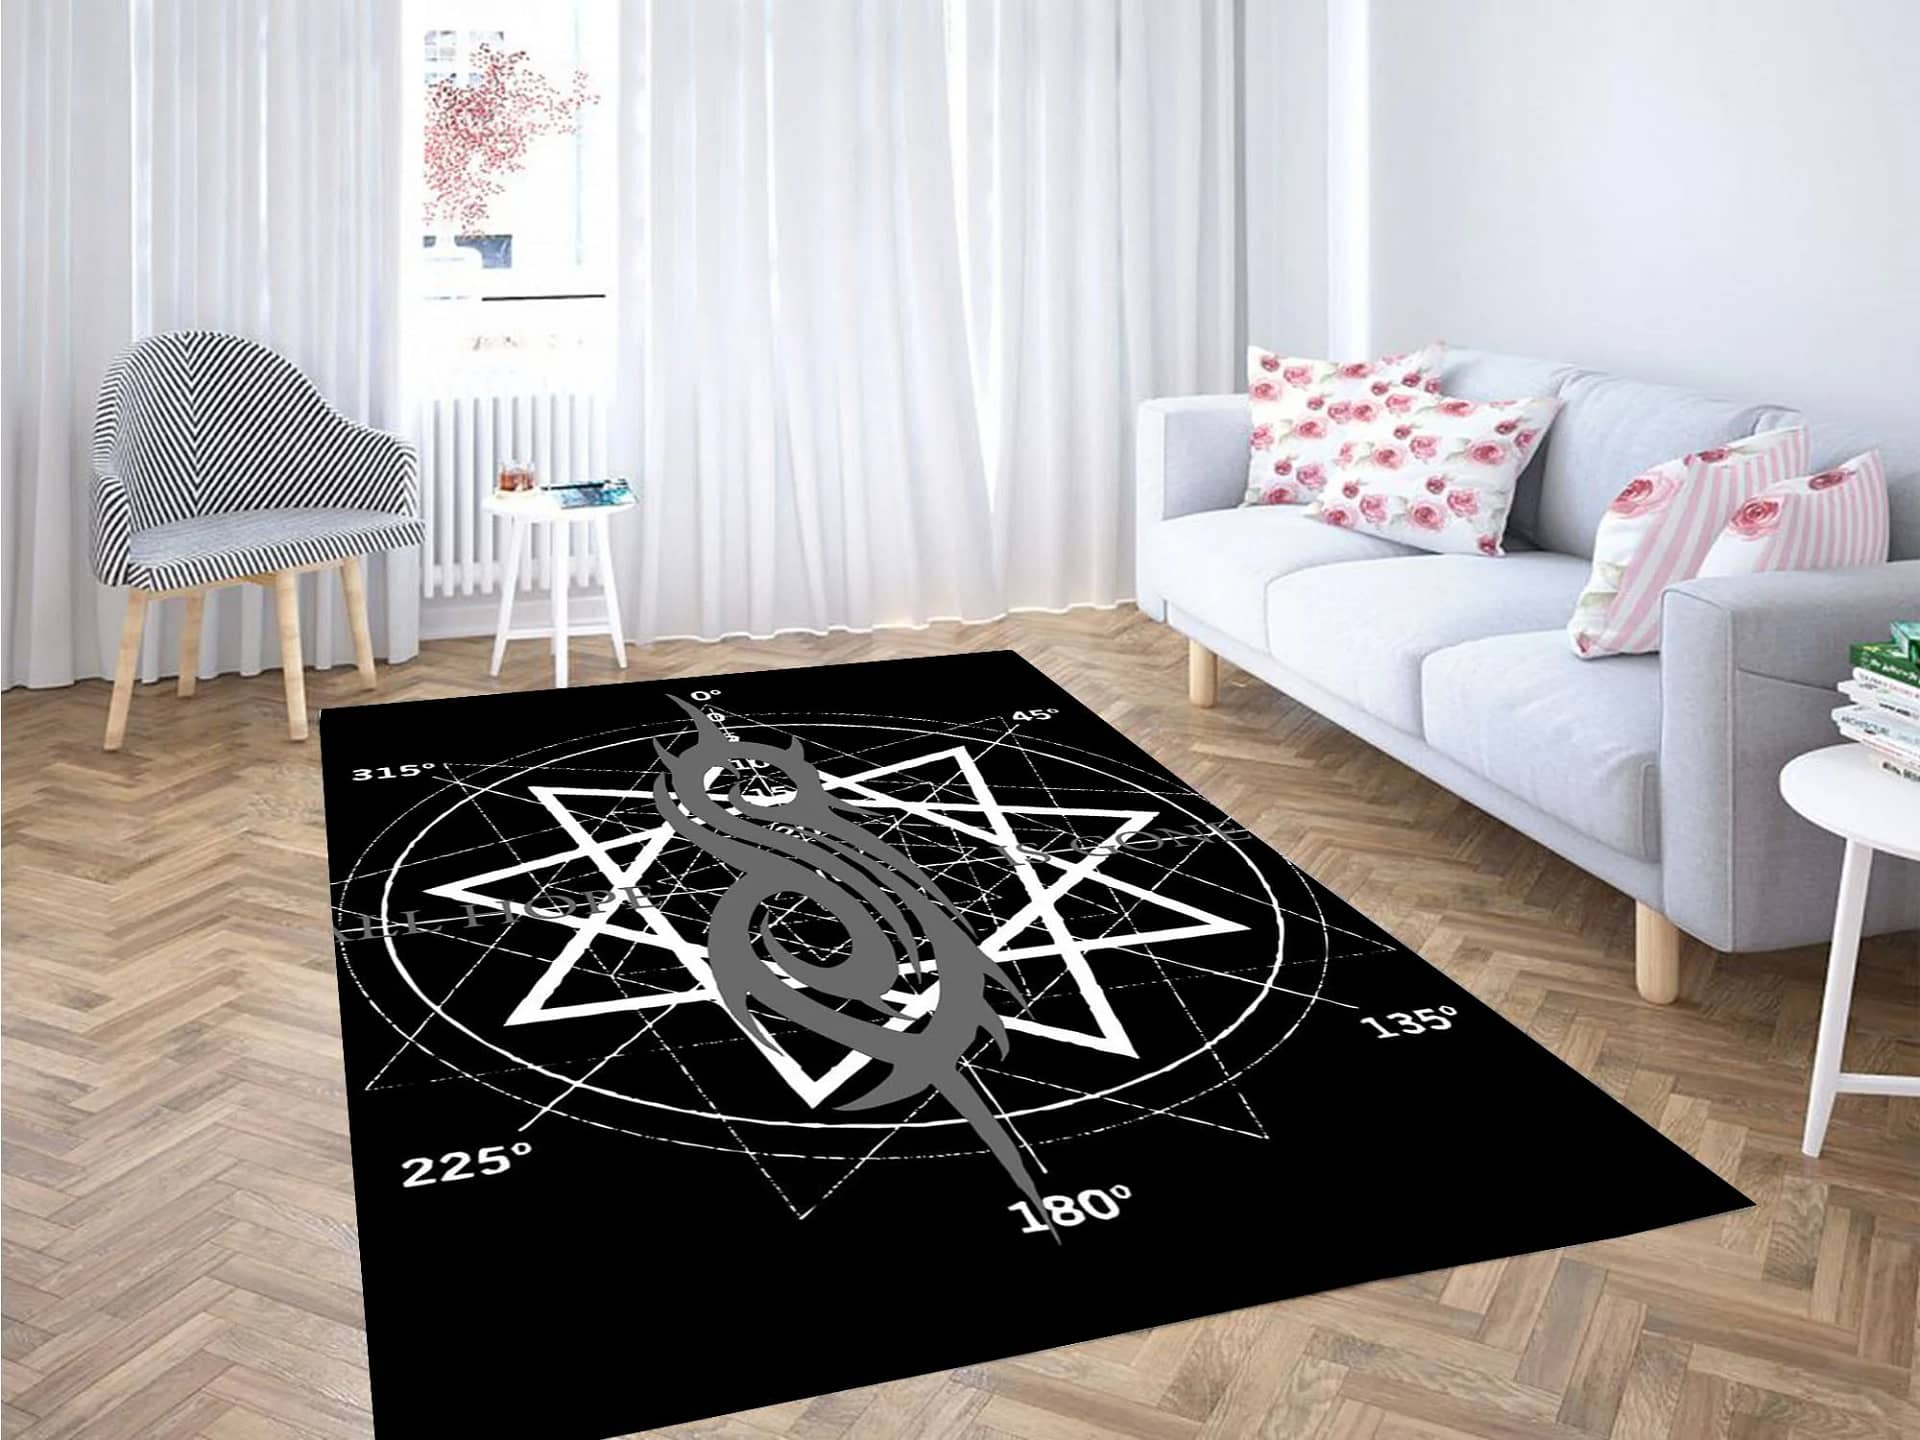 Slipknot Iconic Carpet Rug